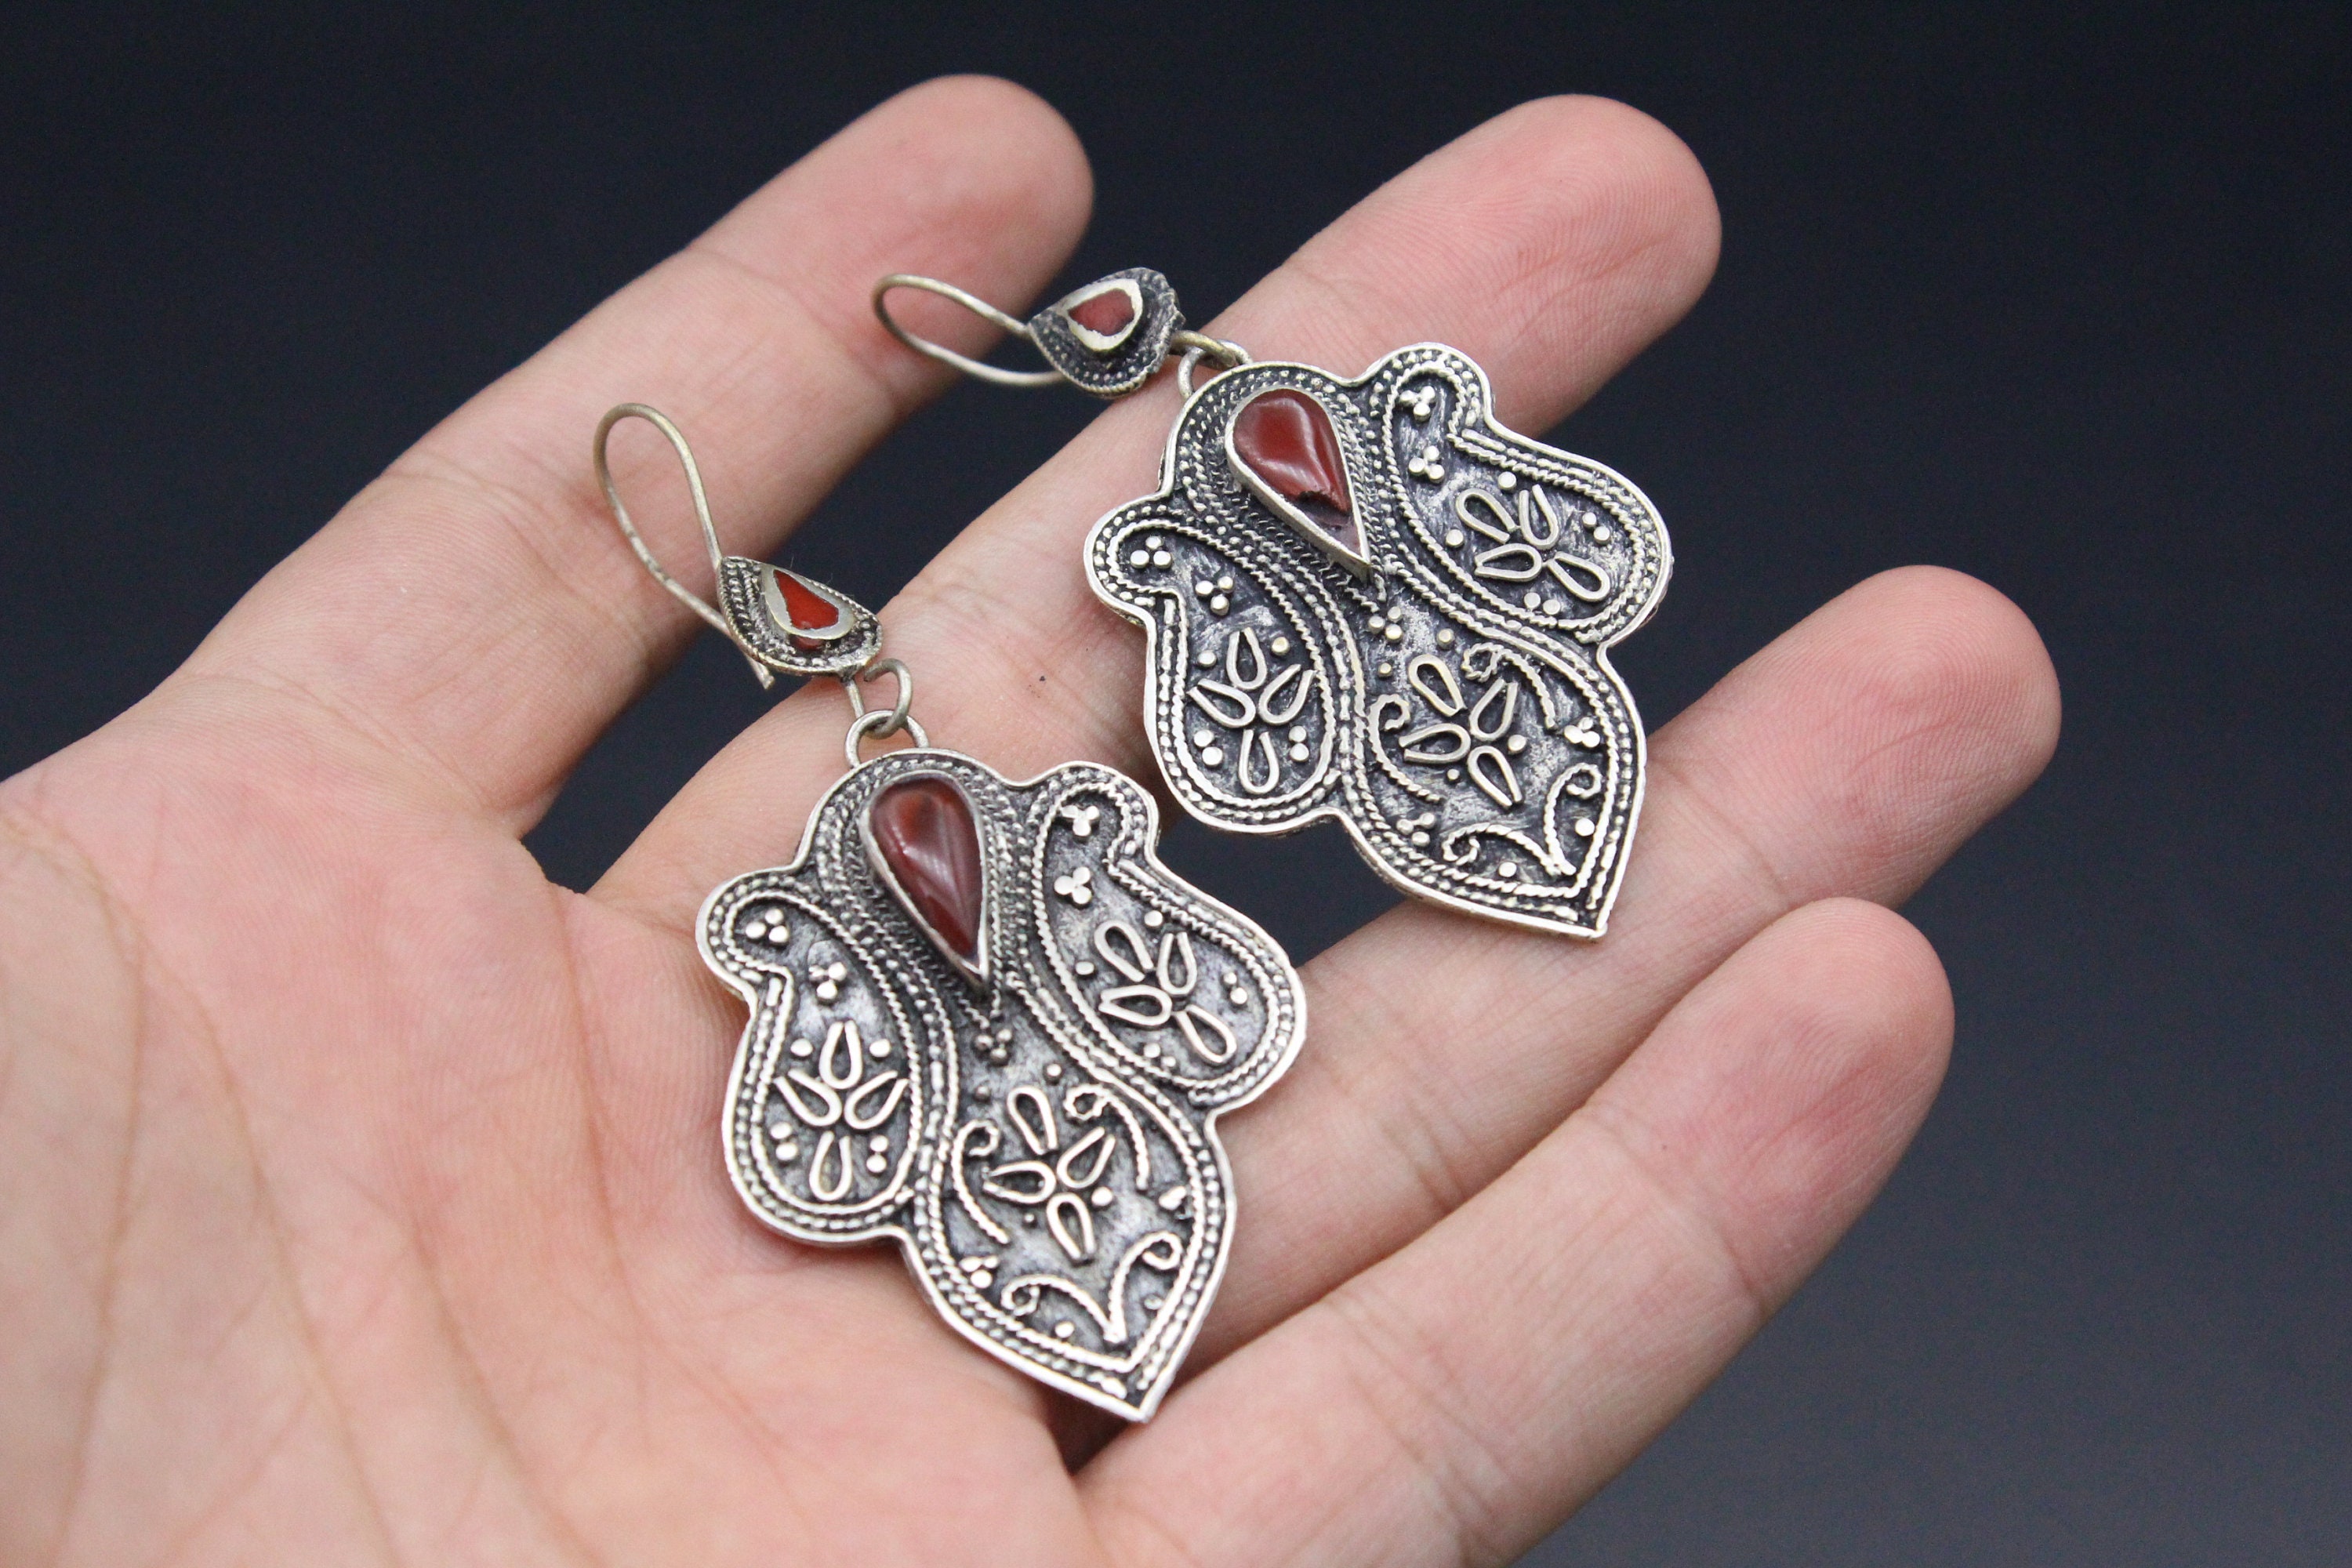 Details about   Turkmen Earring Afghan Ethnic Tribal Black Carnelian Oval Earring Handmade TE199 